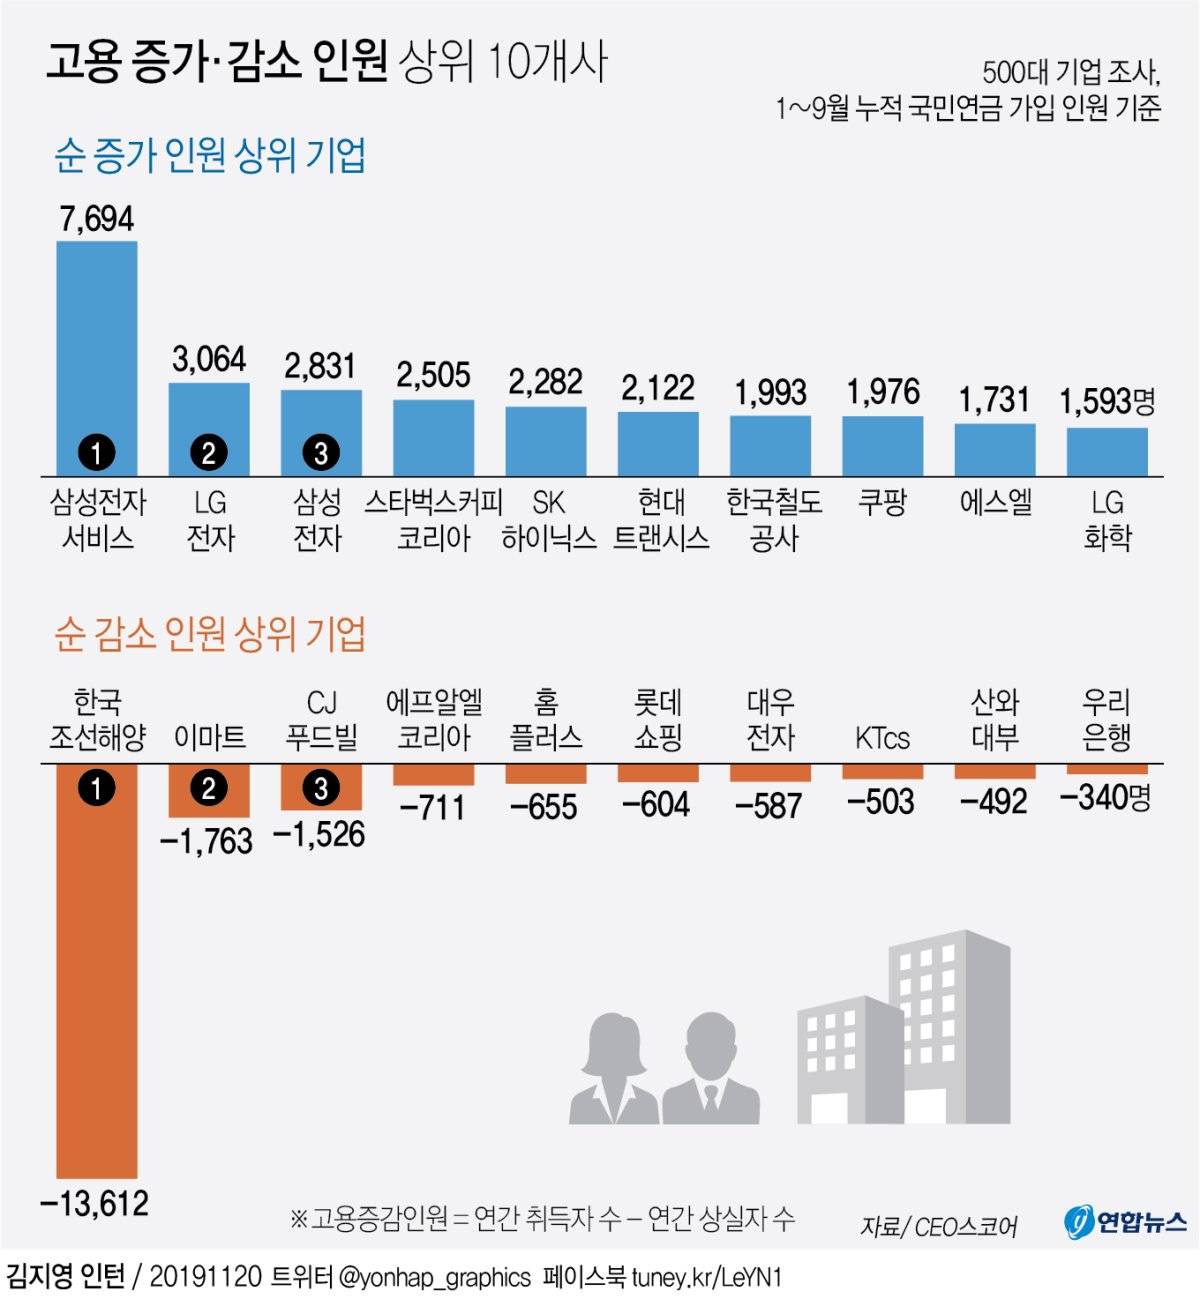 [그래픽] 고용 증가·감소 인원 상위 10개사